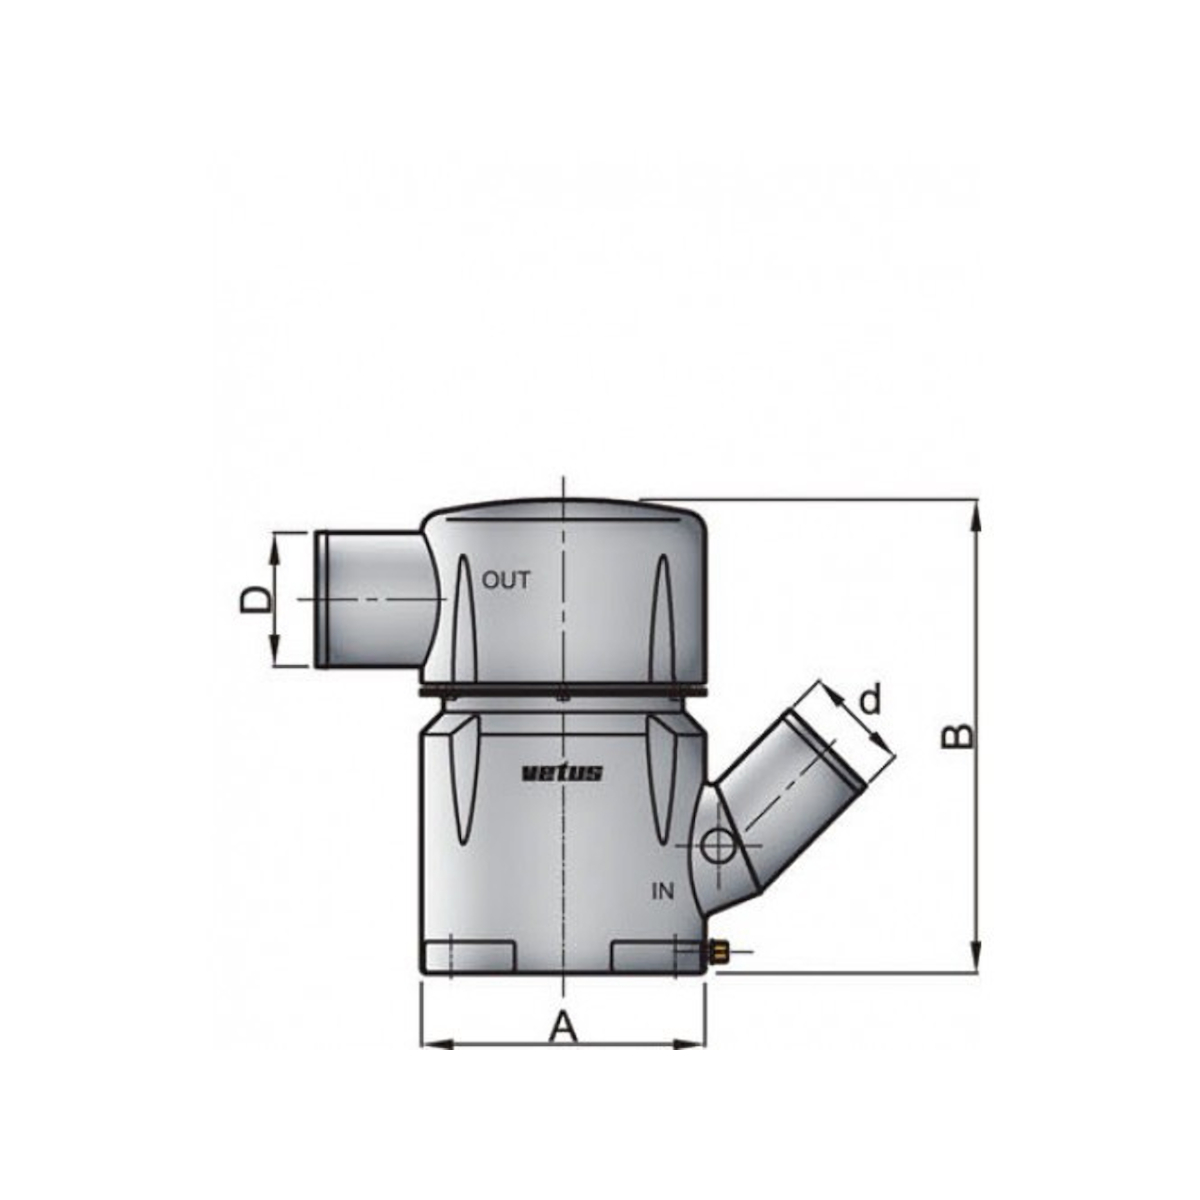 Vetus waterlock mgp - entrée 127 mm - 45° - sortie 127 mm